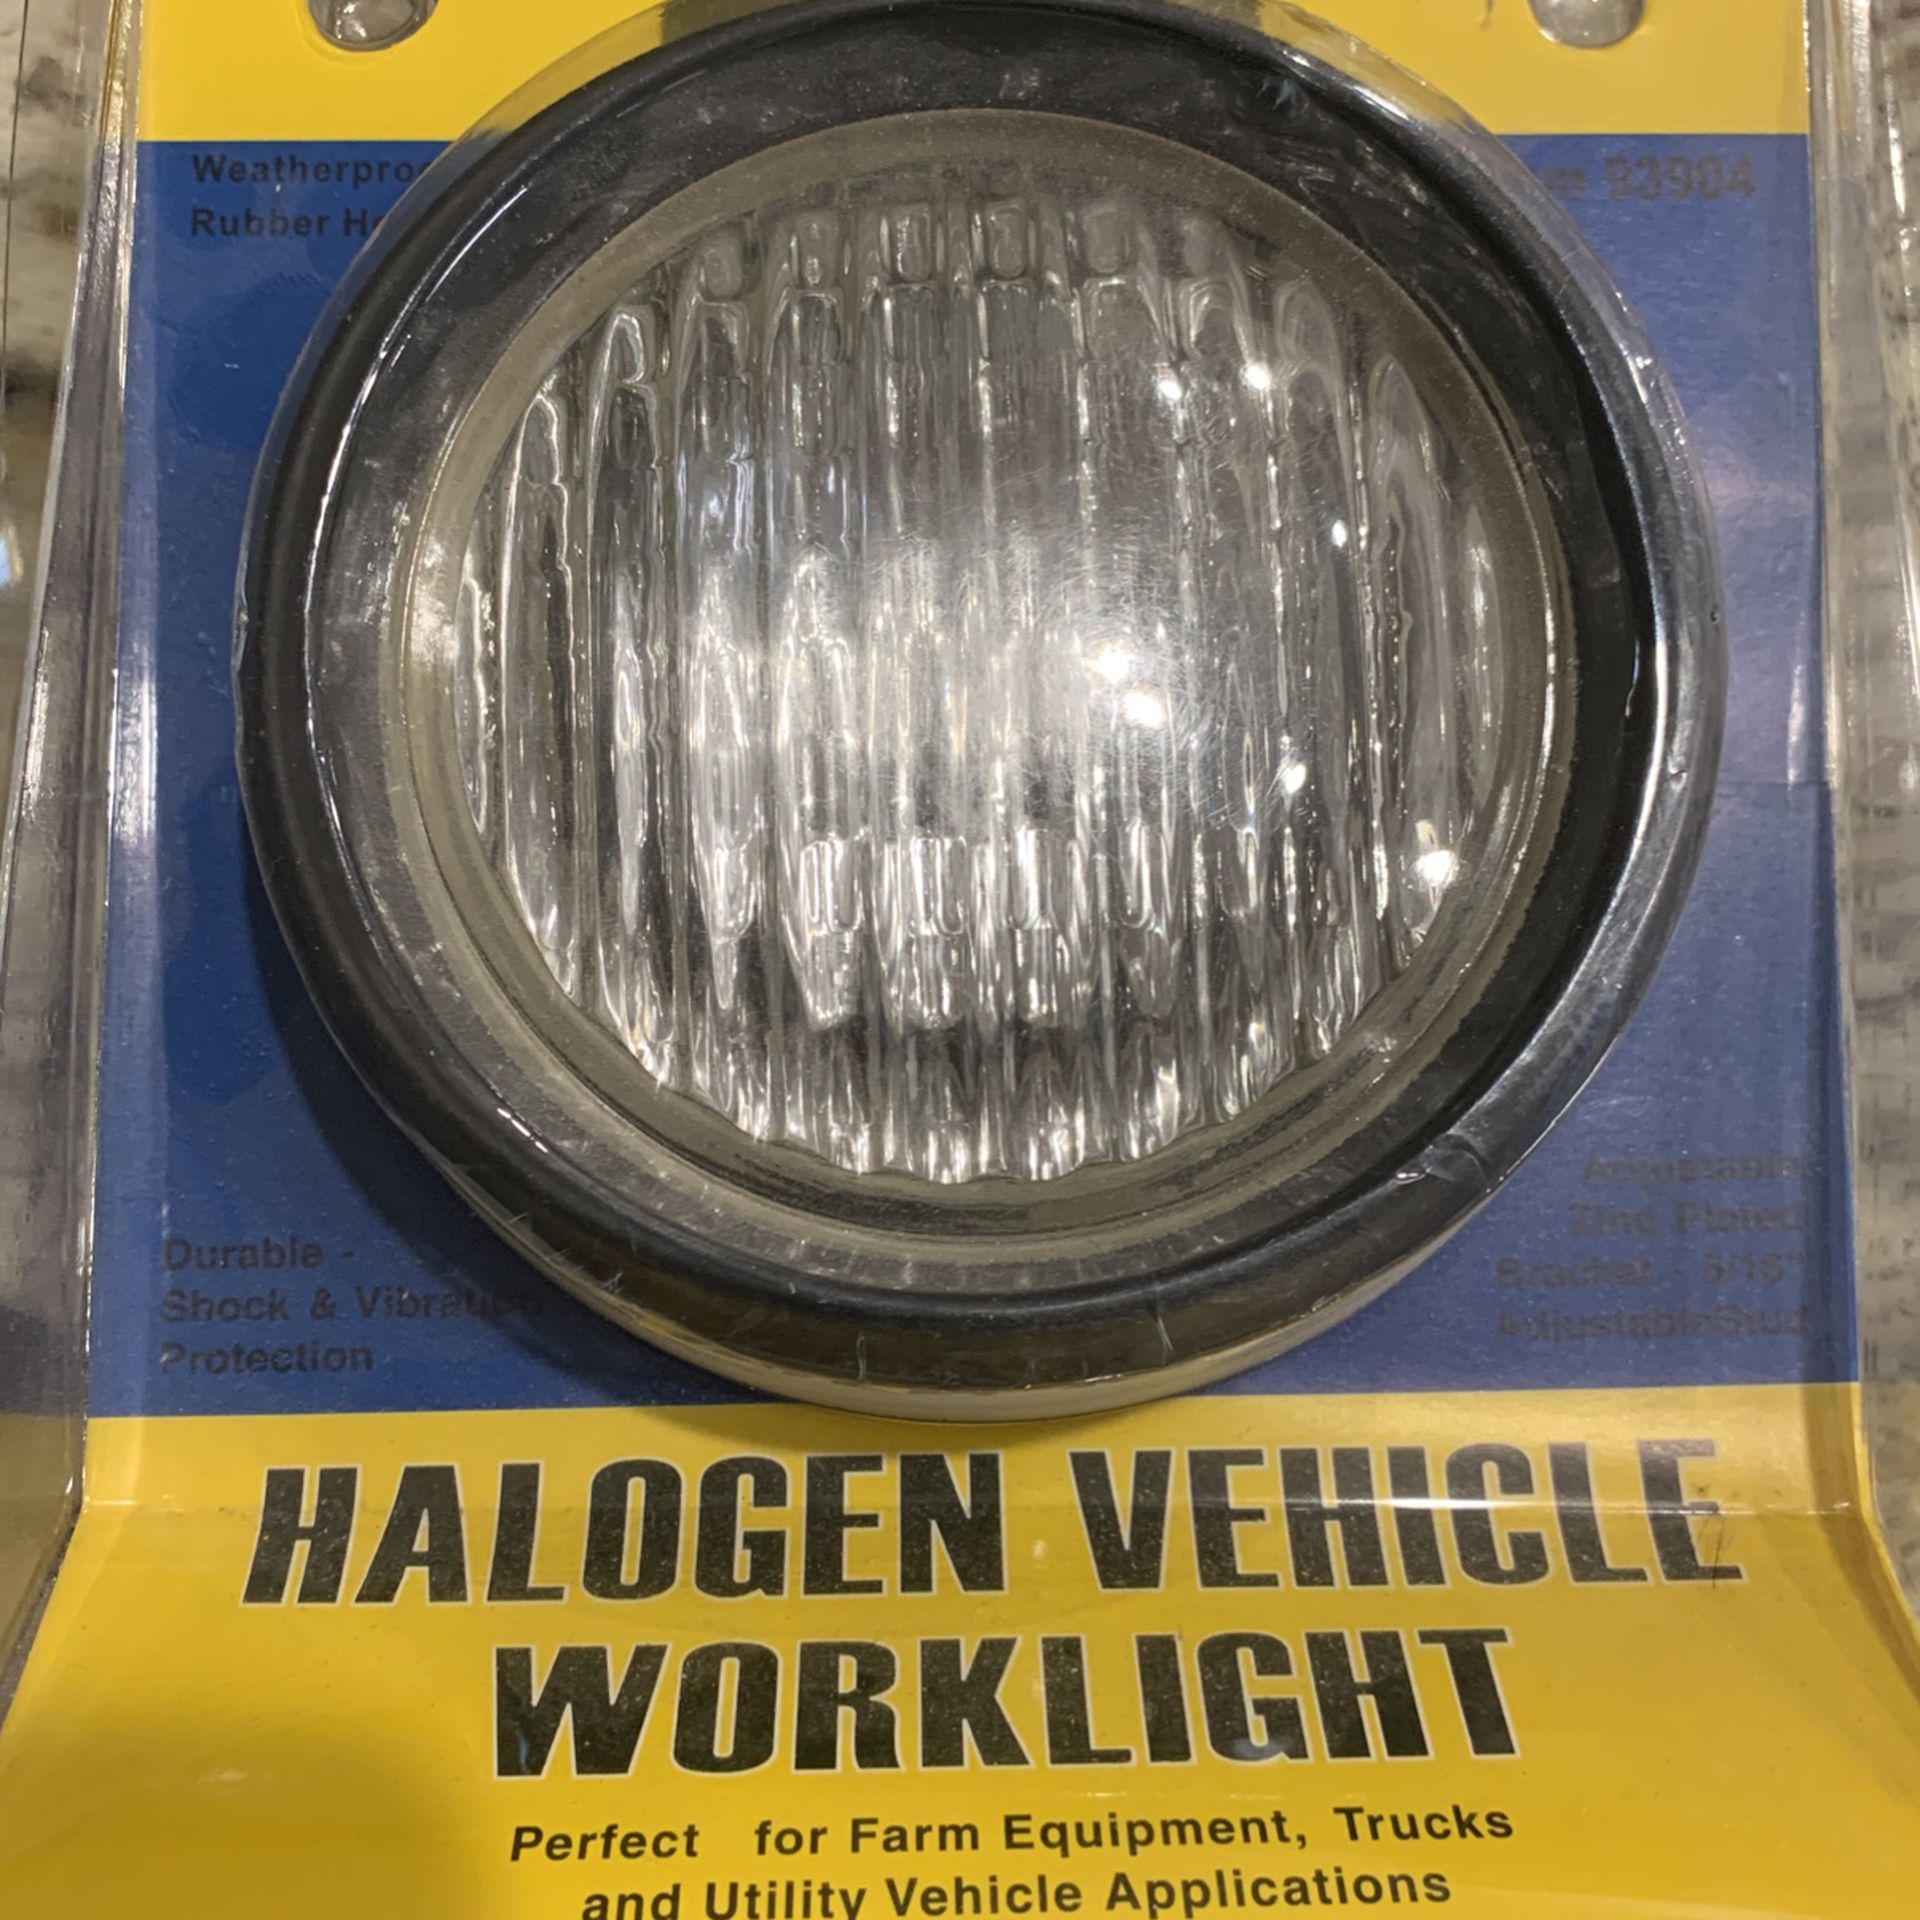 New Halogen Vehicle Worklight